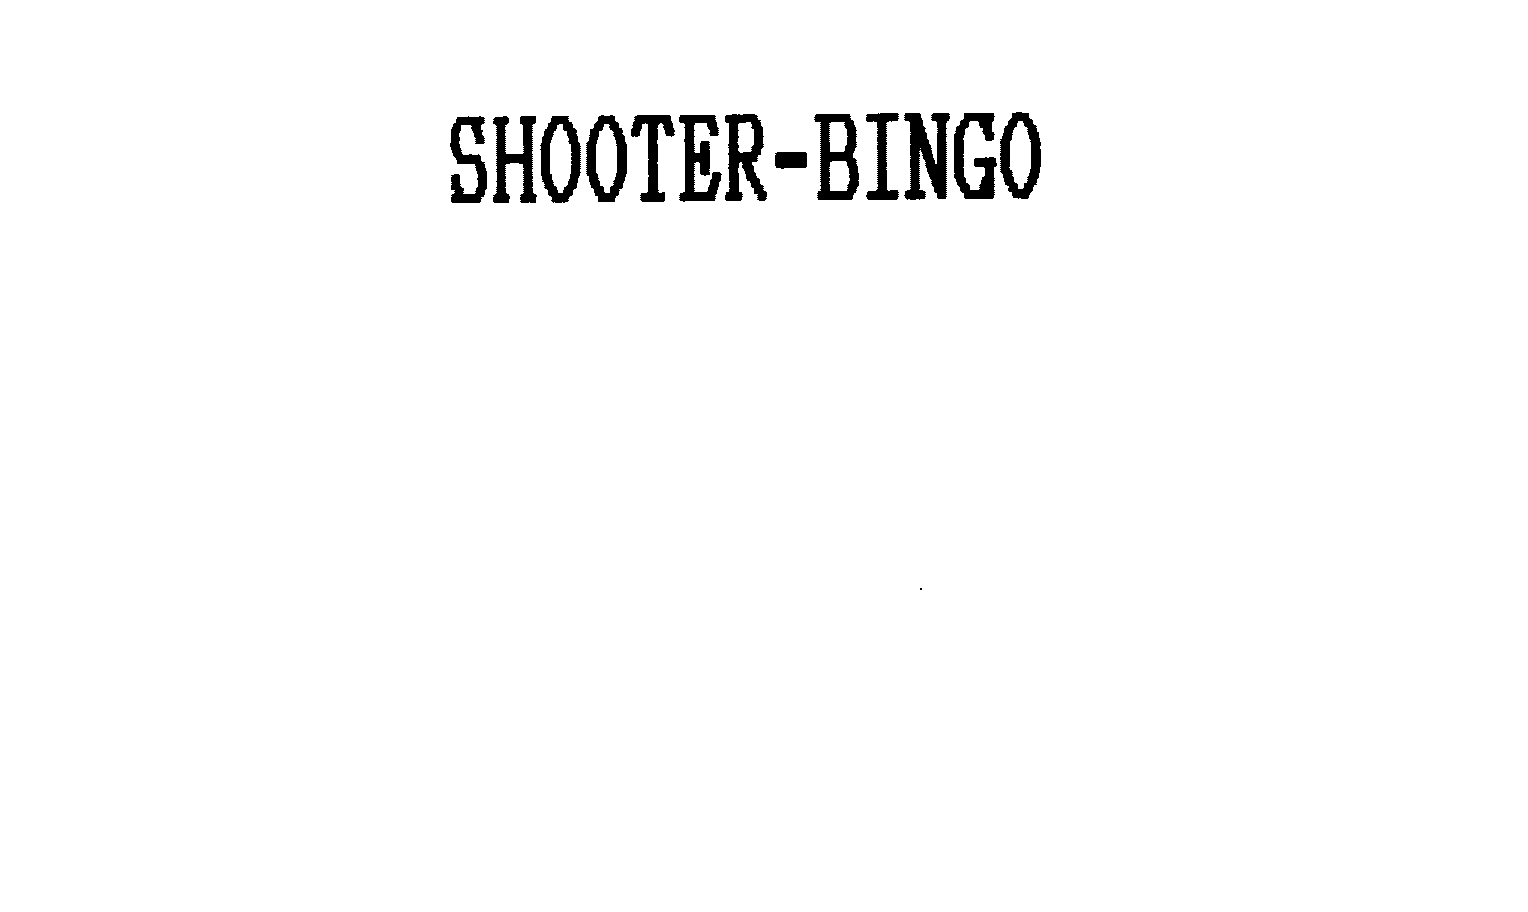  SHOOTER-BINGO